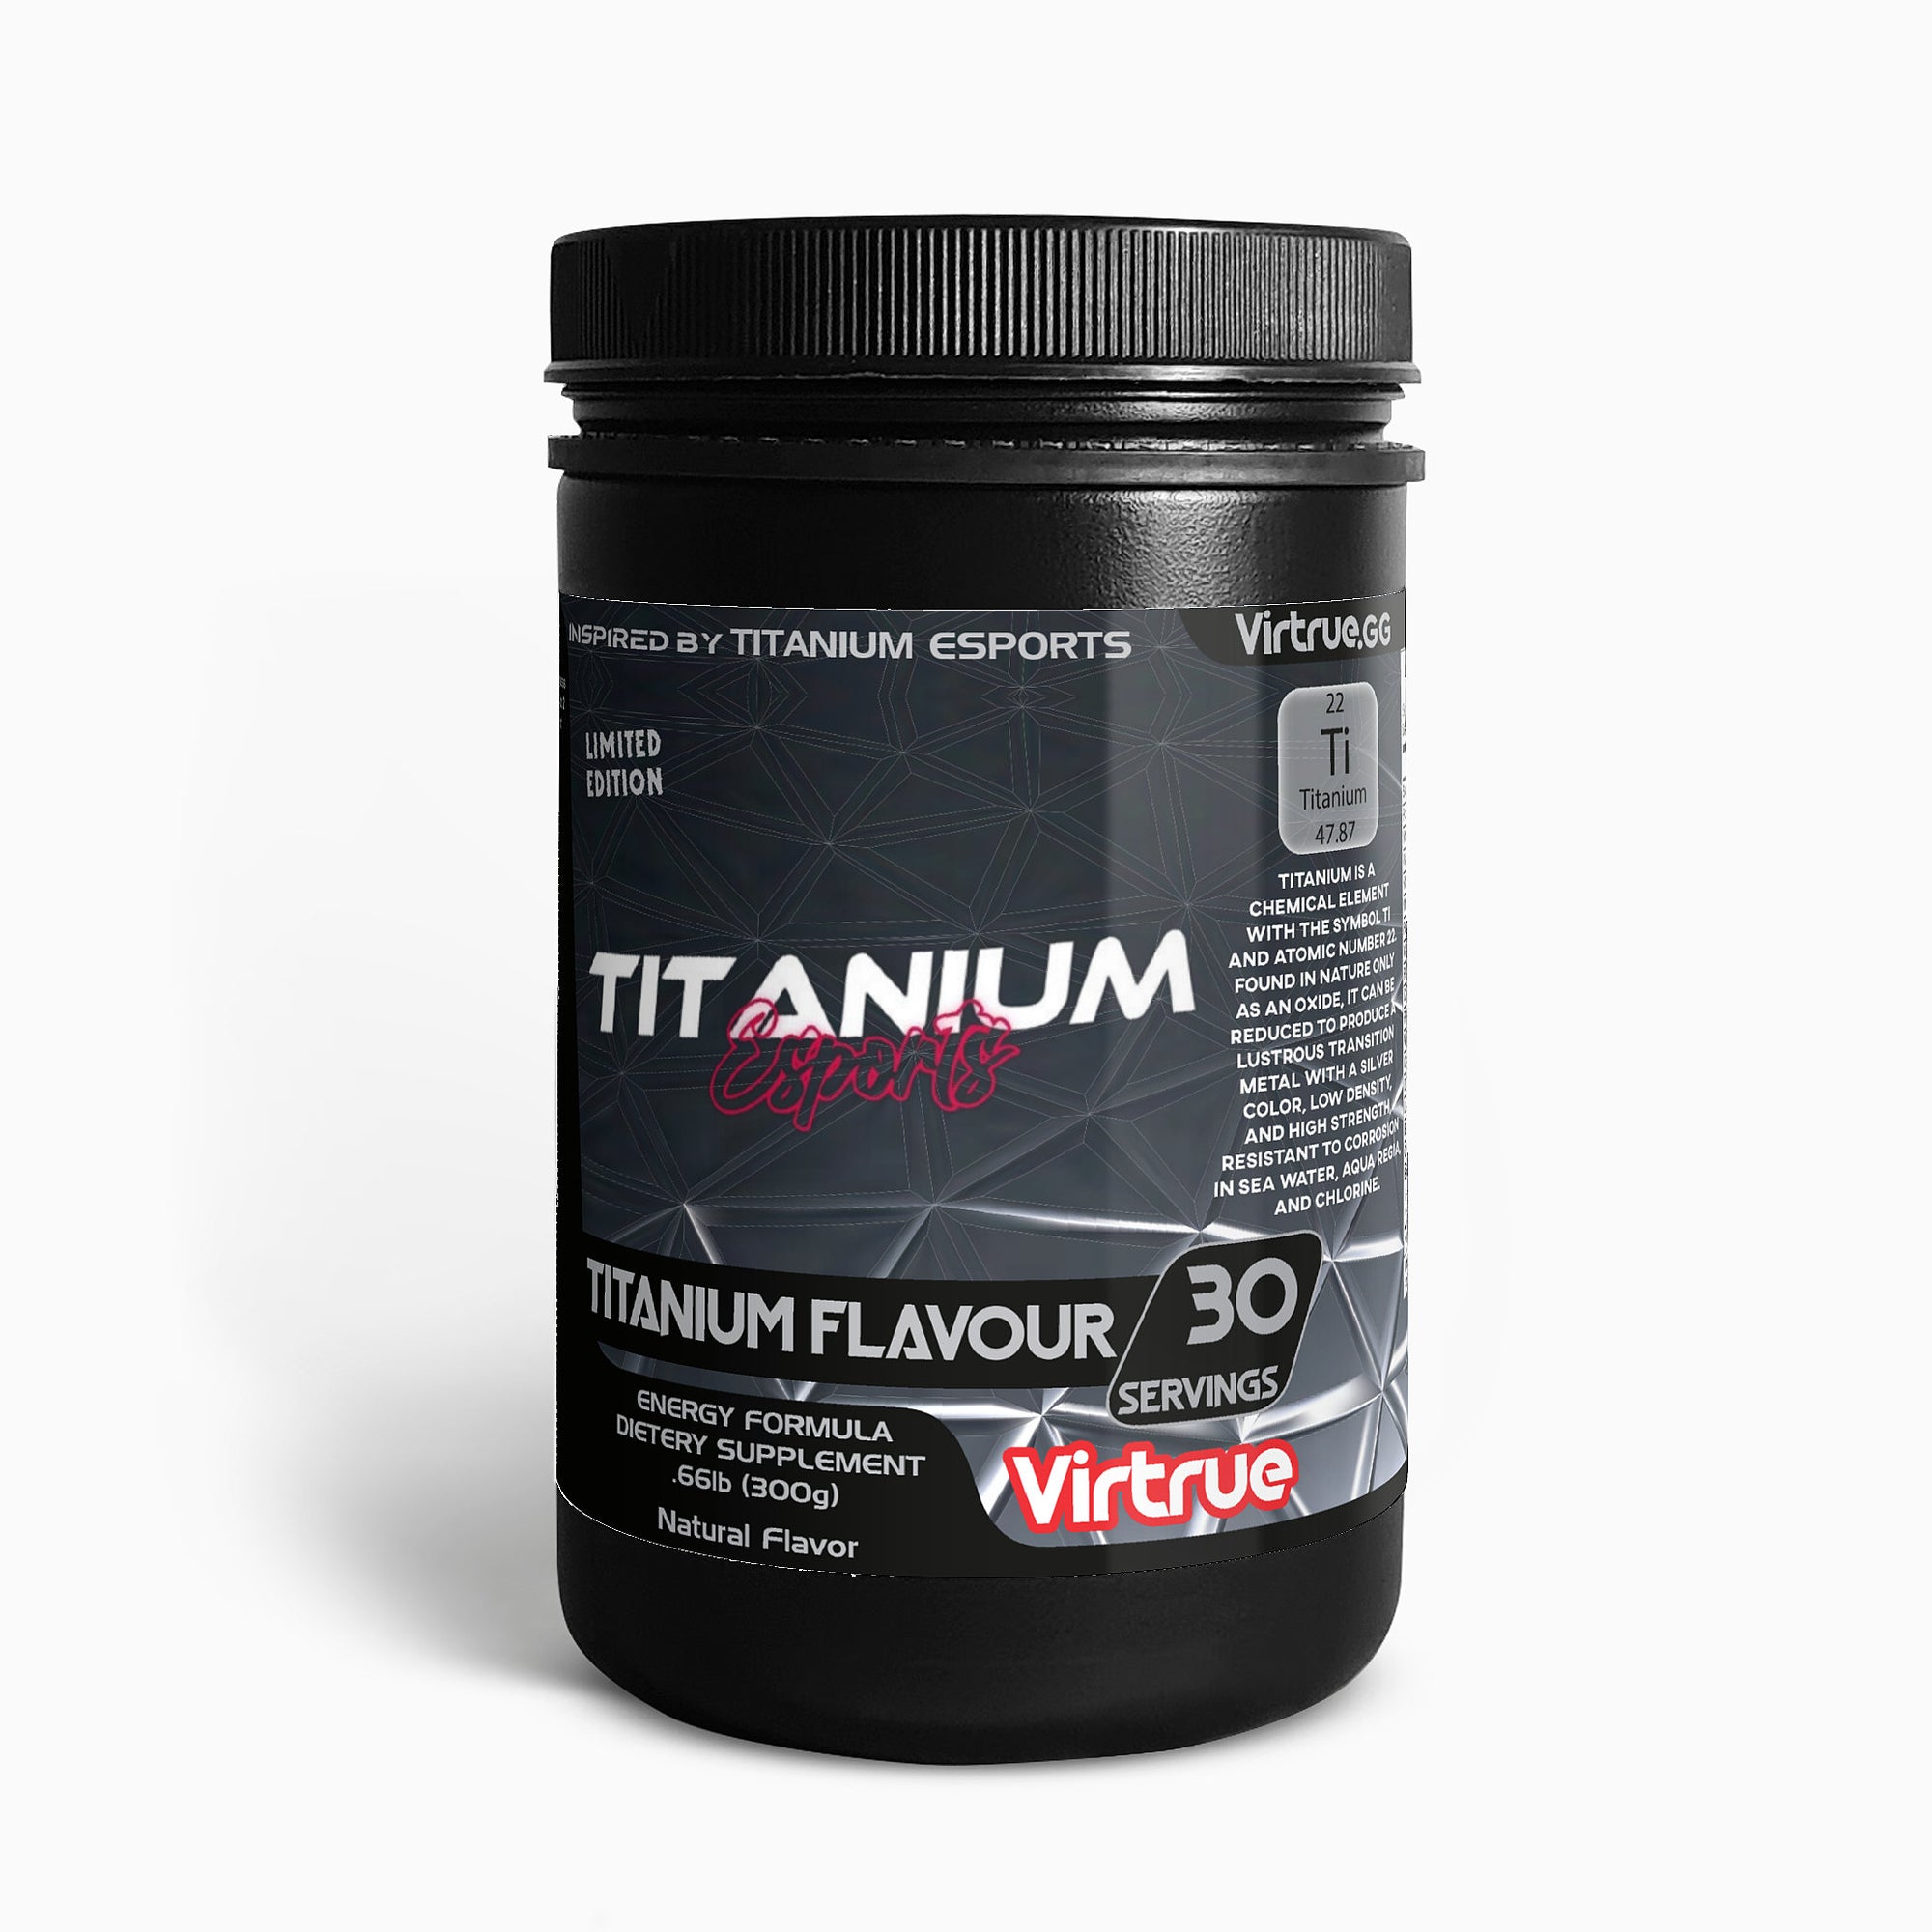 Titanium Energy Formula - Inspired by Titanium Esports